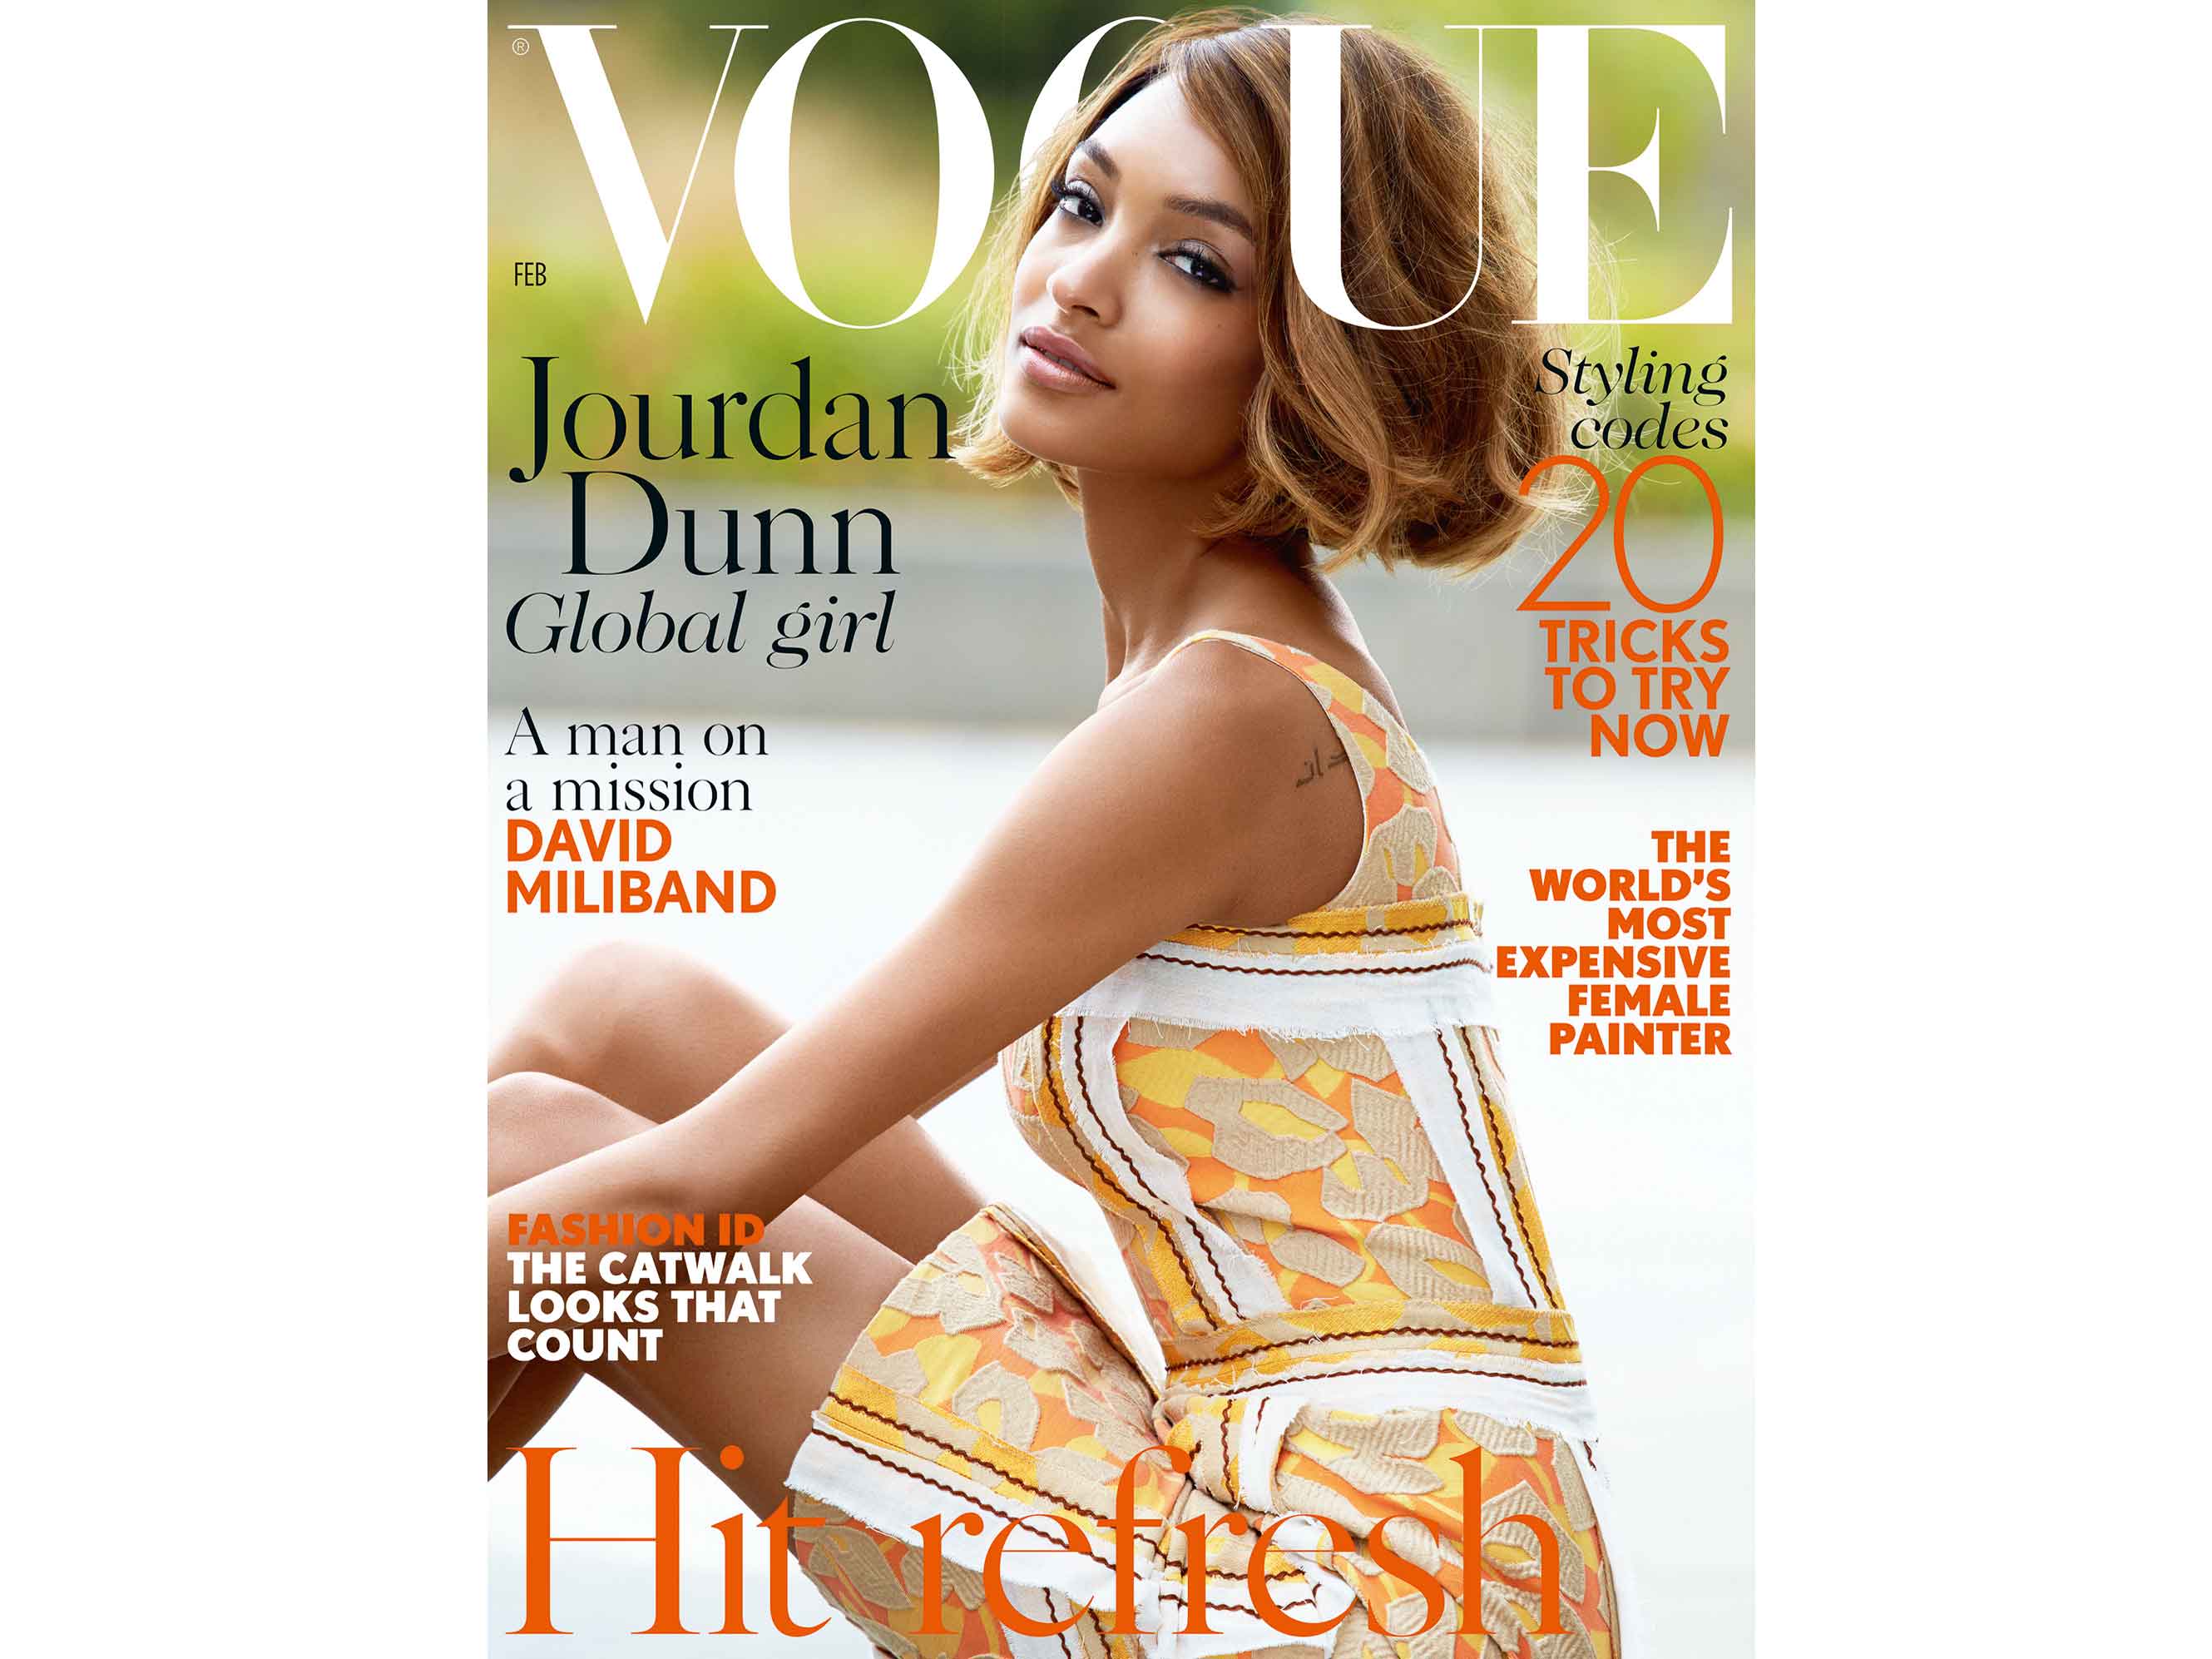 Jourdan Dunn stars on the cover of February Vogue